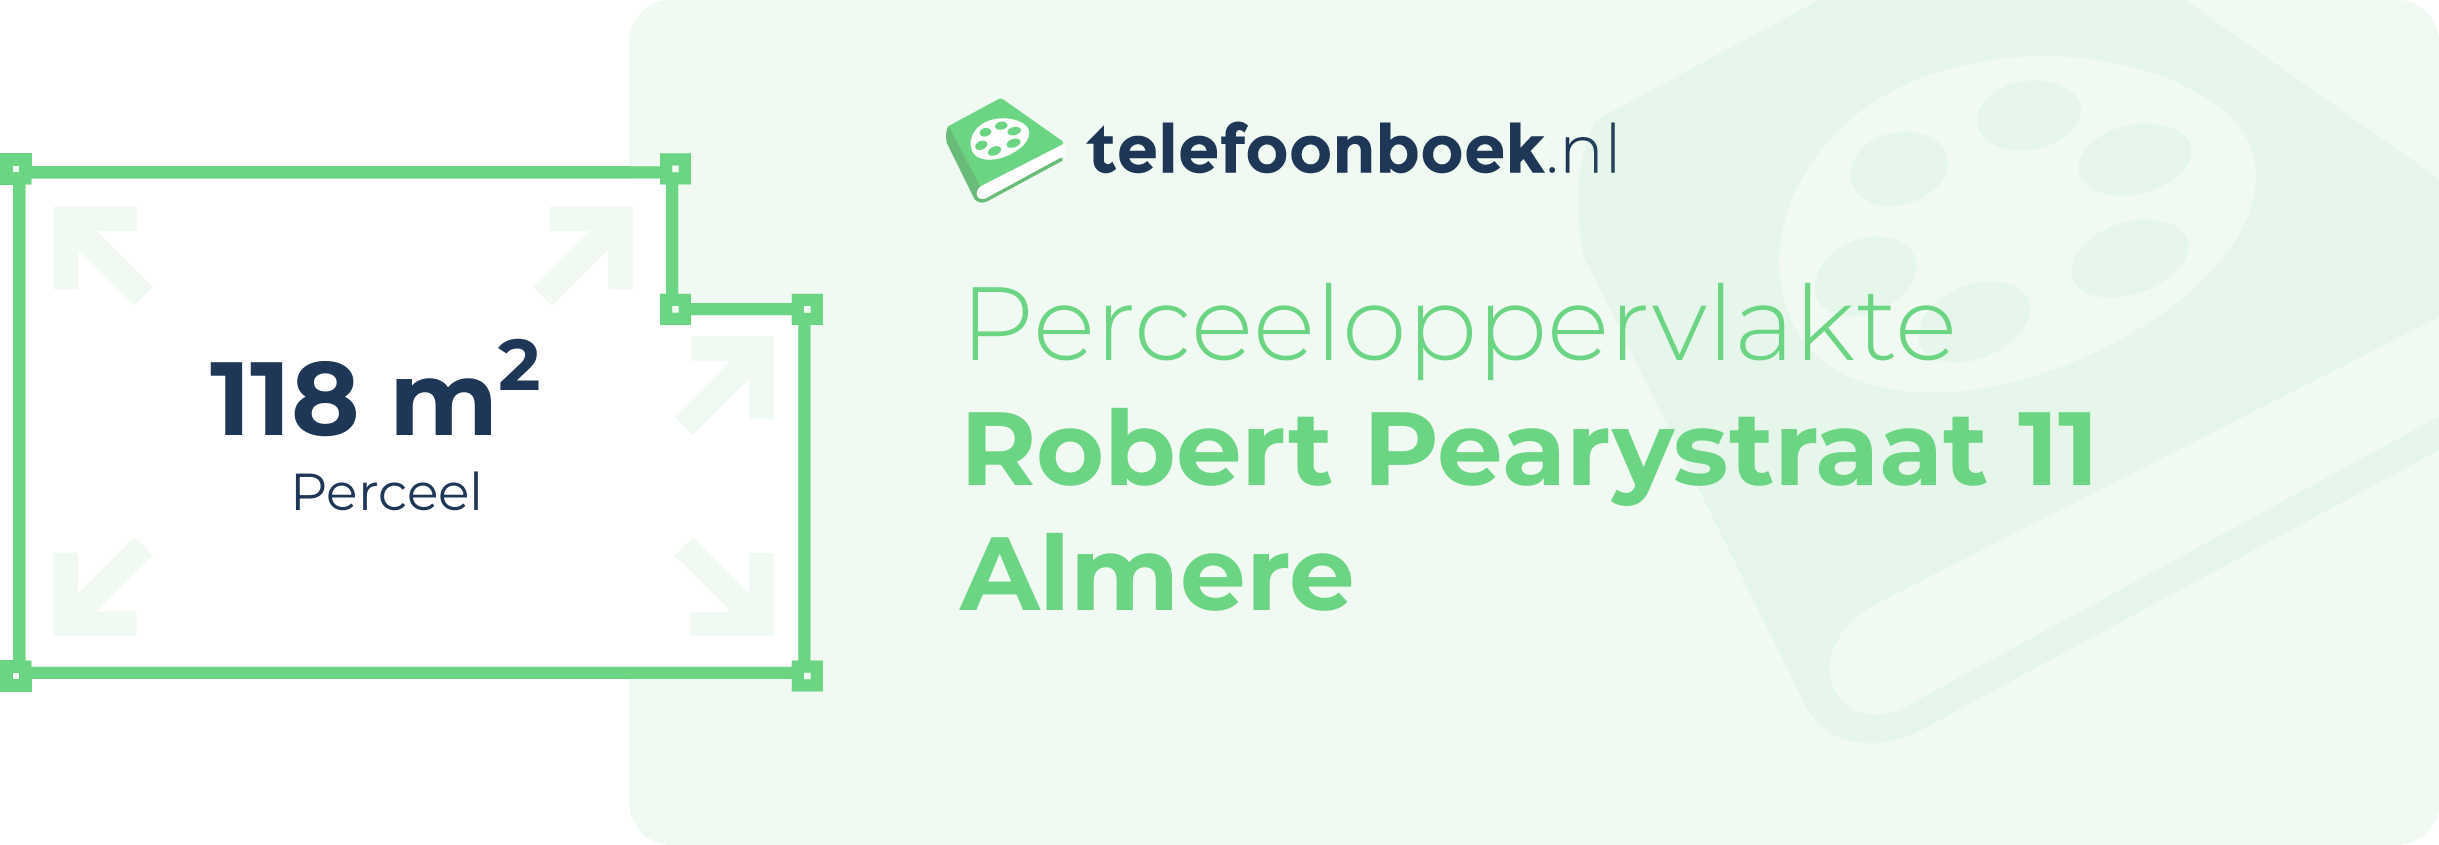 Perceeloppervlakte Robert Pearystraat 11 Almere